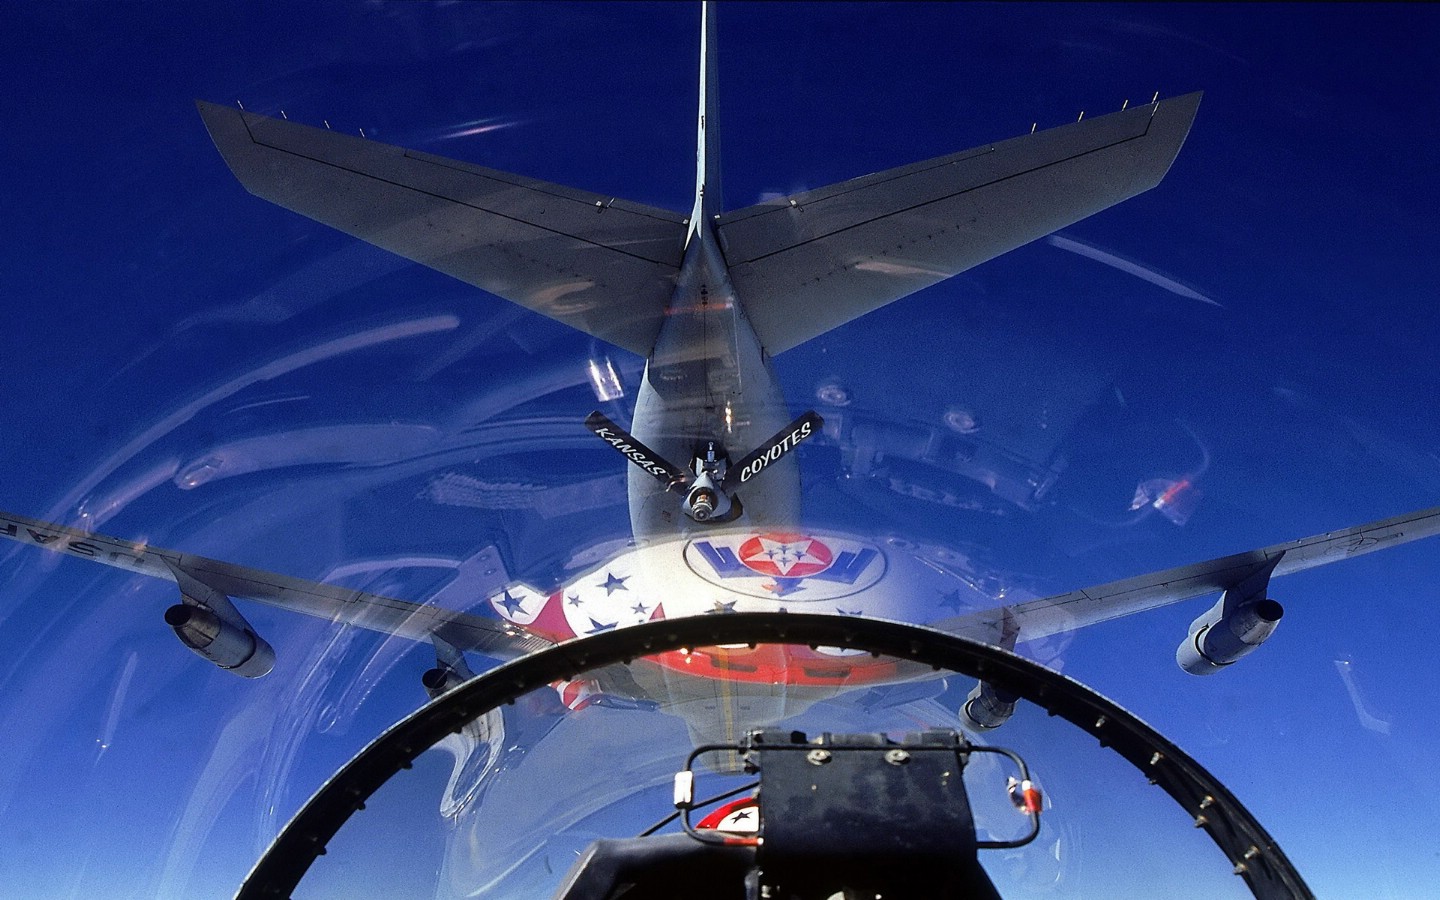 壁纸1440x900美国空军USAF的雷鸟 USAF Thunderbirds 壁纸25壁纸 美国空军USAF的雷壁纸 美国空军USAF的雷图片 美国空军USAF的雷素材 军事壁纸 军事图库 军事图片素材桌面壁纸